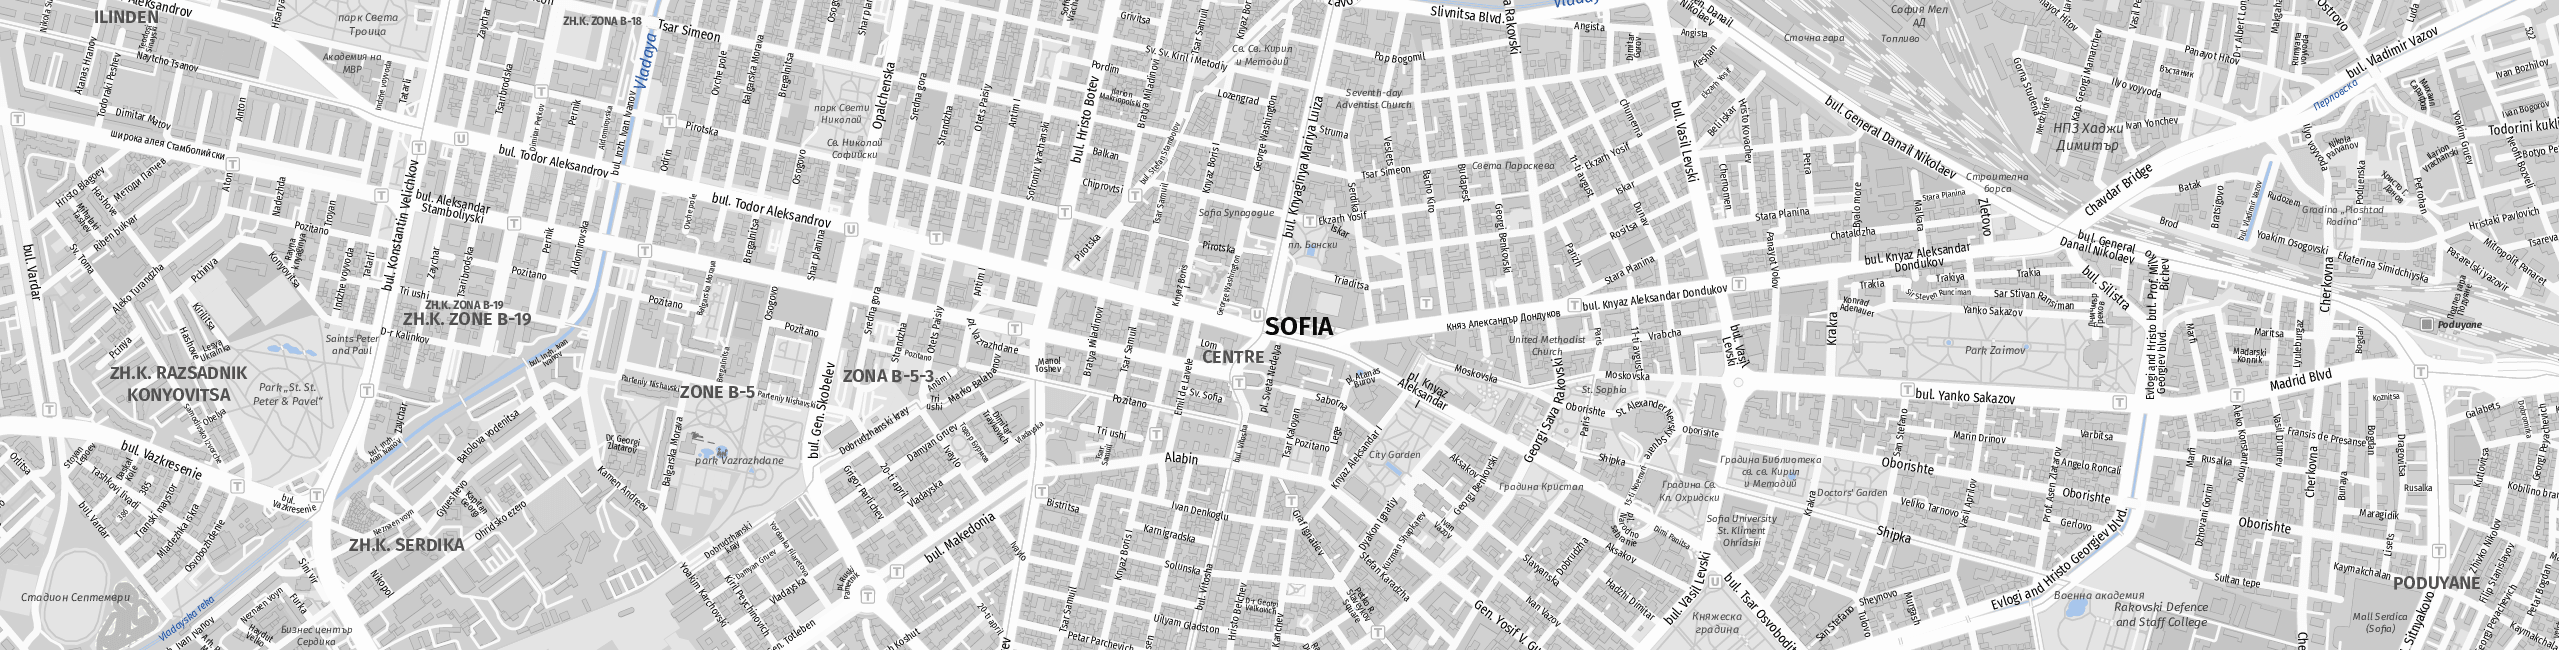 Stadtplan Sofia zum Downloaden.